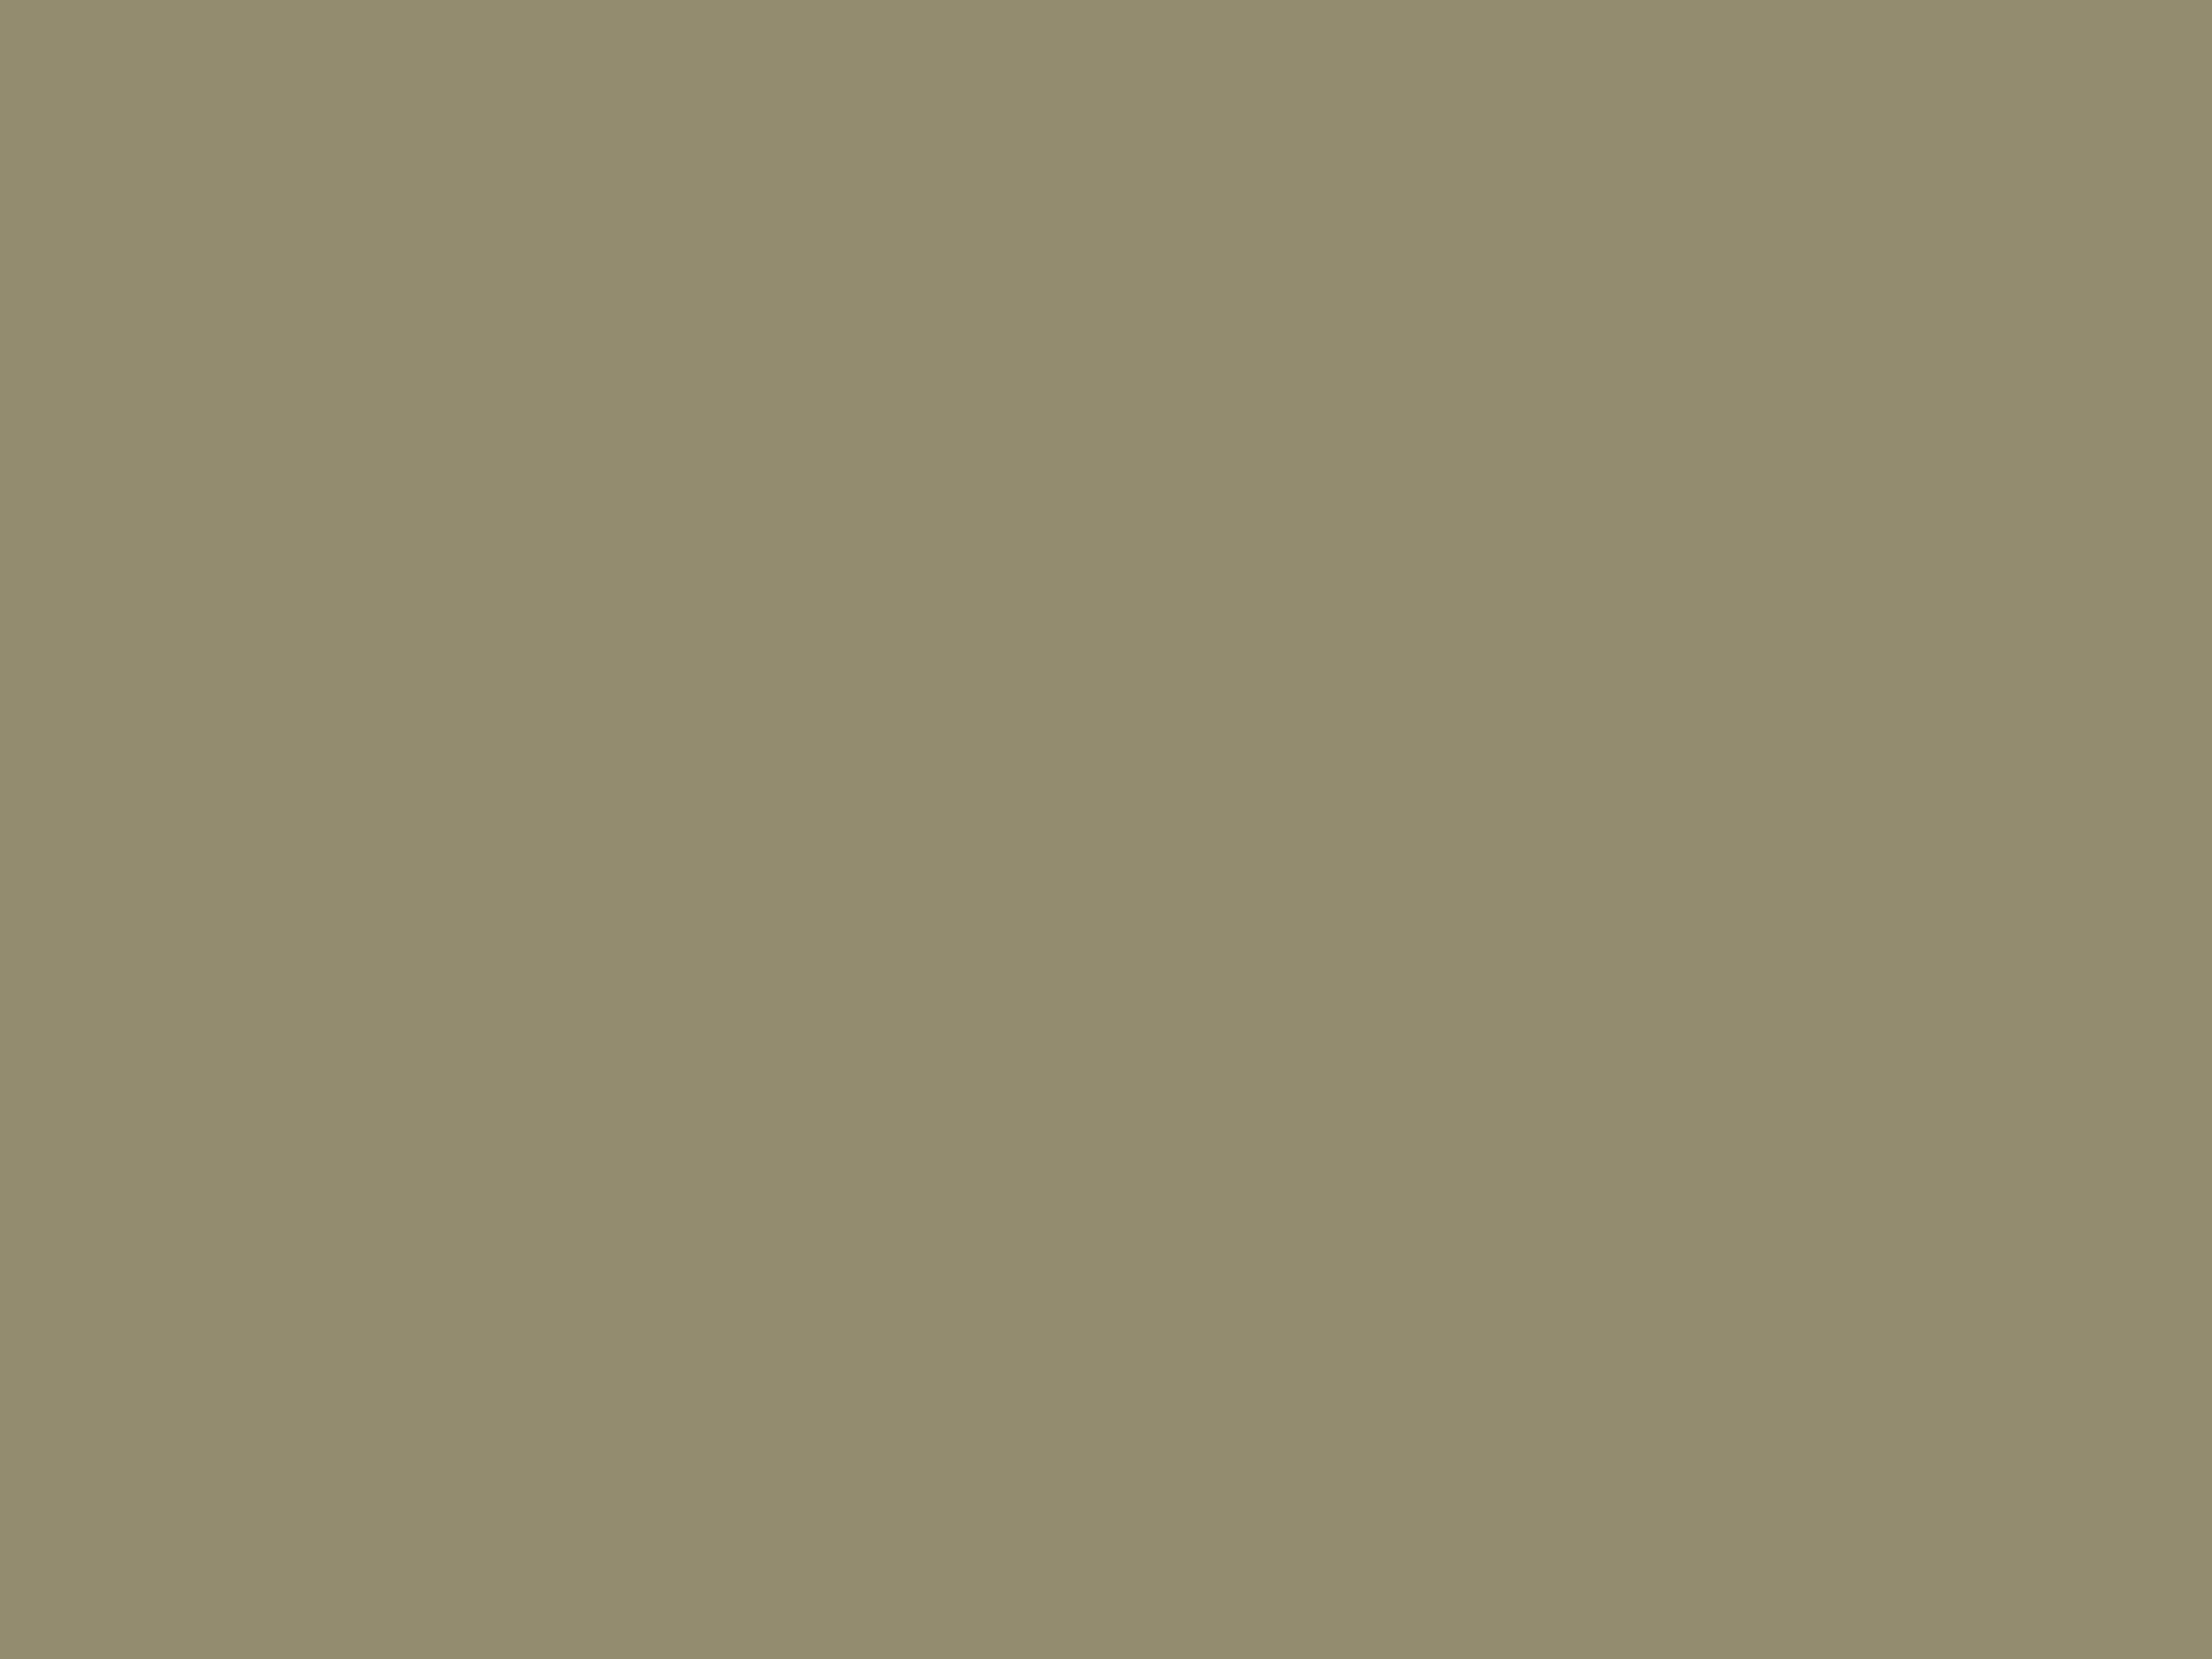 Бляшка с изображением Медузы горгоны. Золото. Ок. 350 г. до н. э. Фотография: Государственный исторический музей, Москва